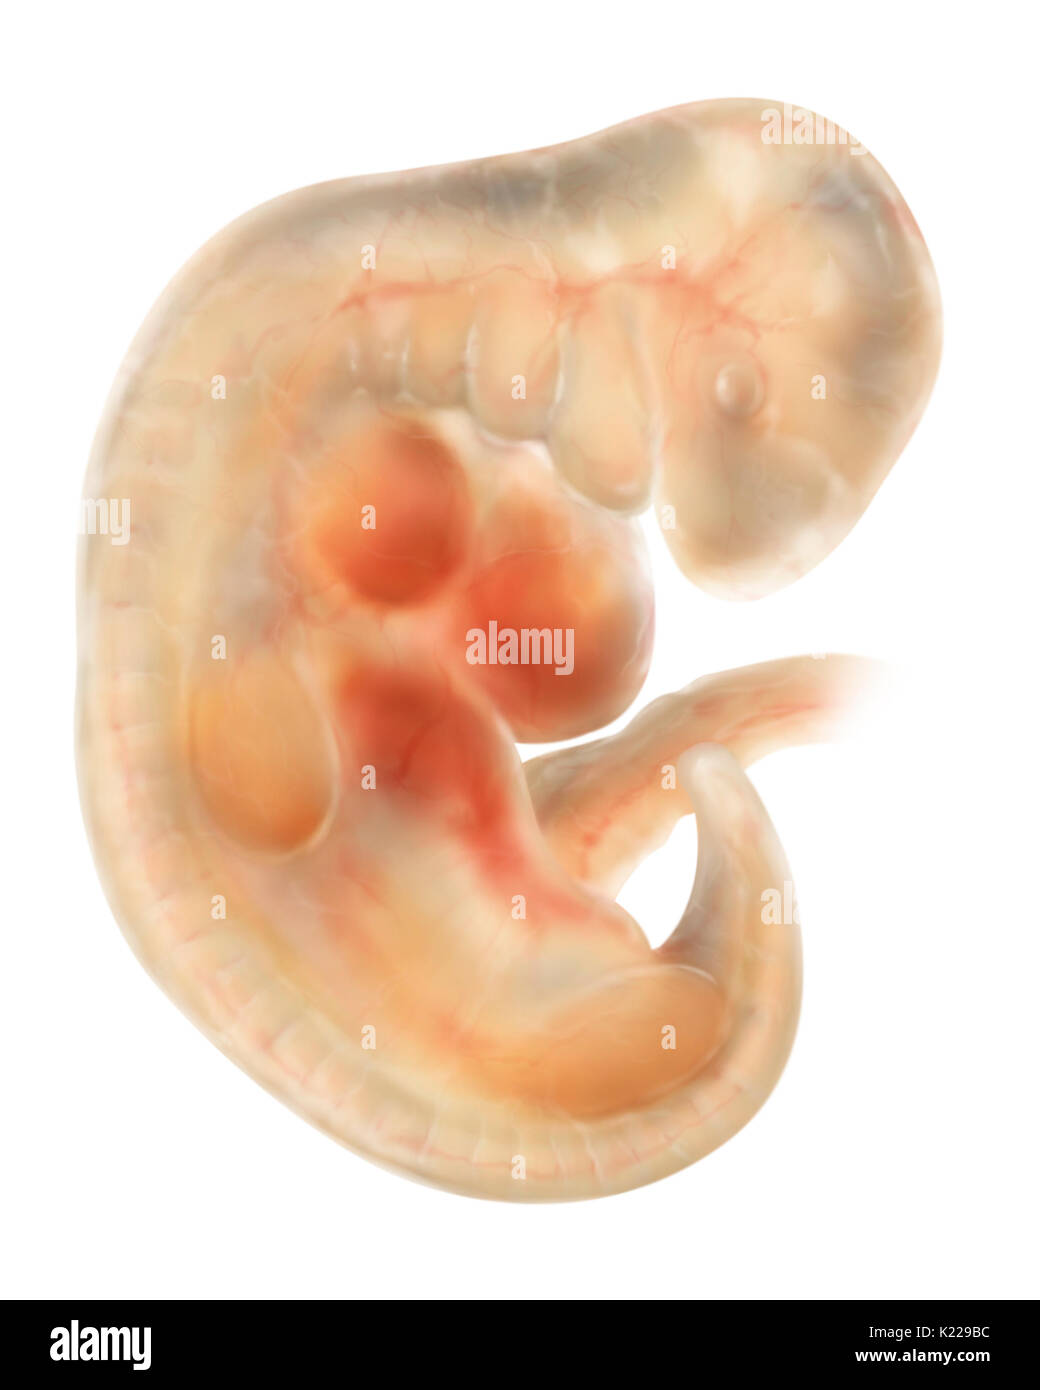 Una di quattro settimane l embrione è piegata a forma di C e misura circa 3∕16 pollici (5 mm). Esso ha le gemme degli arti e la cristallina lenti cominciano a formare. Foto Stock